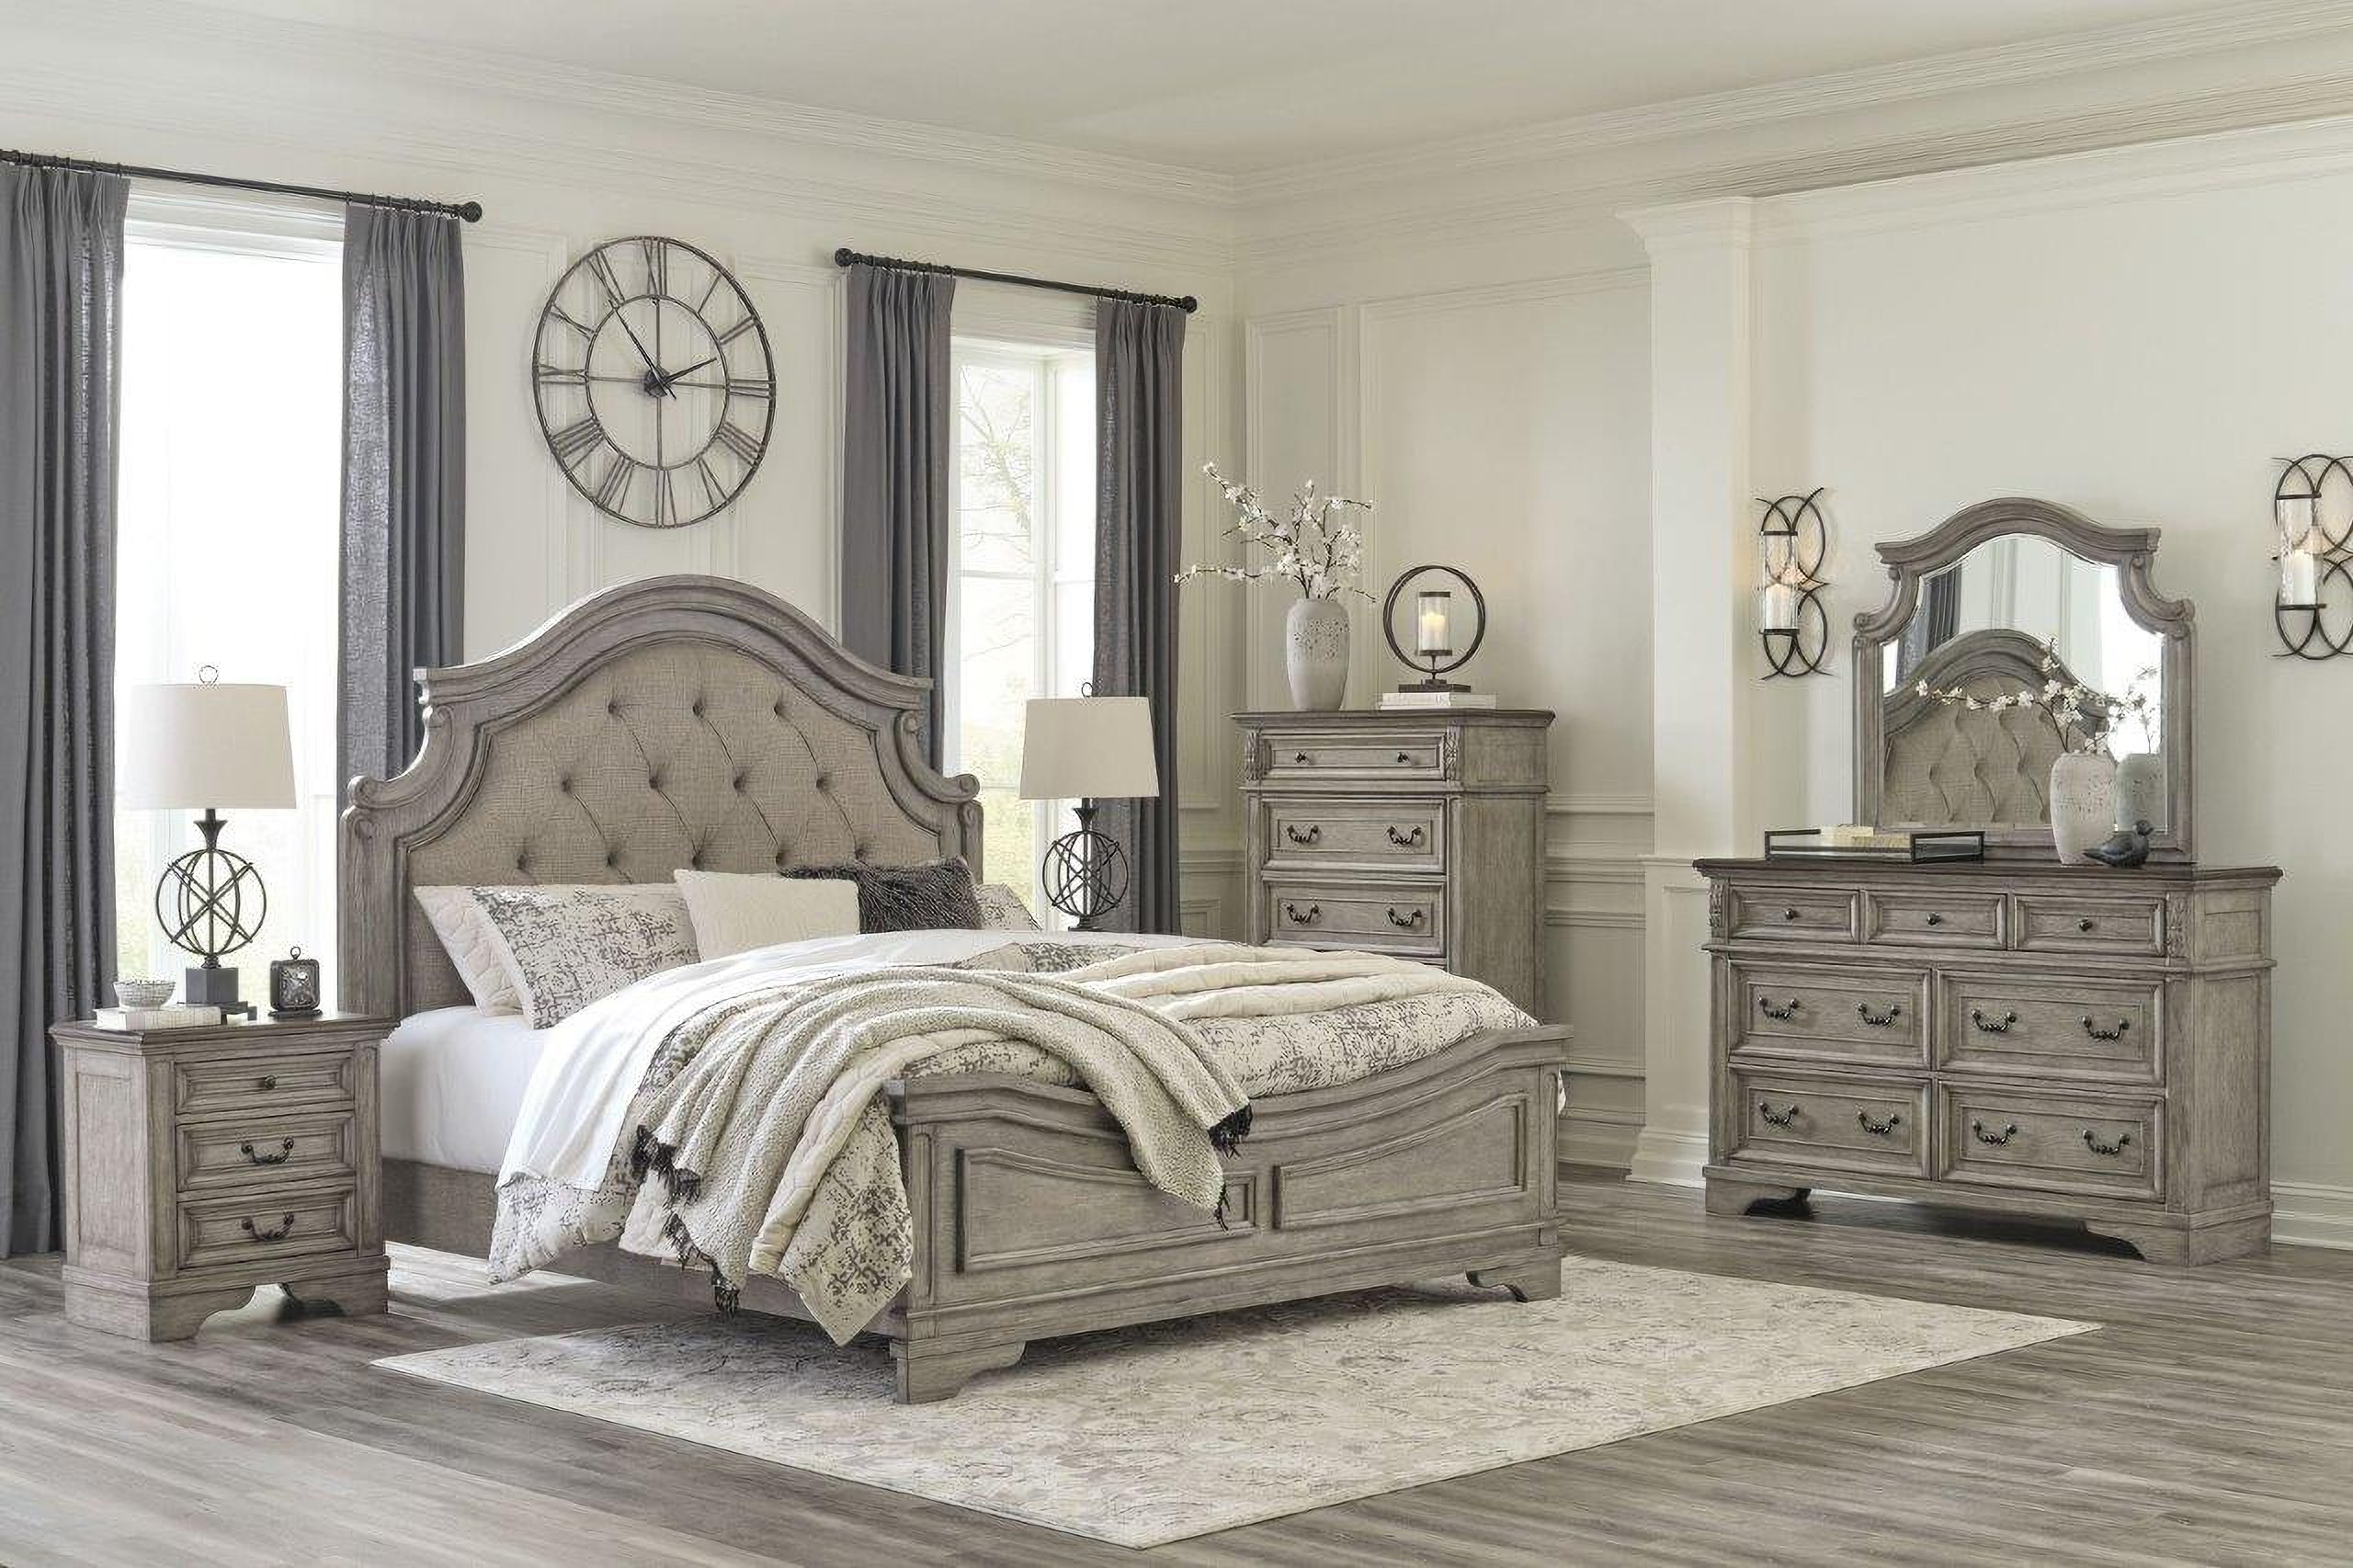 1950 gray bedroom furniture